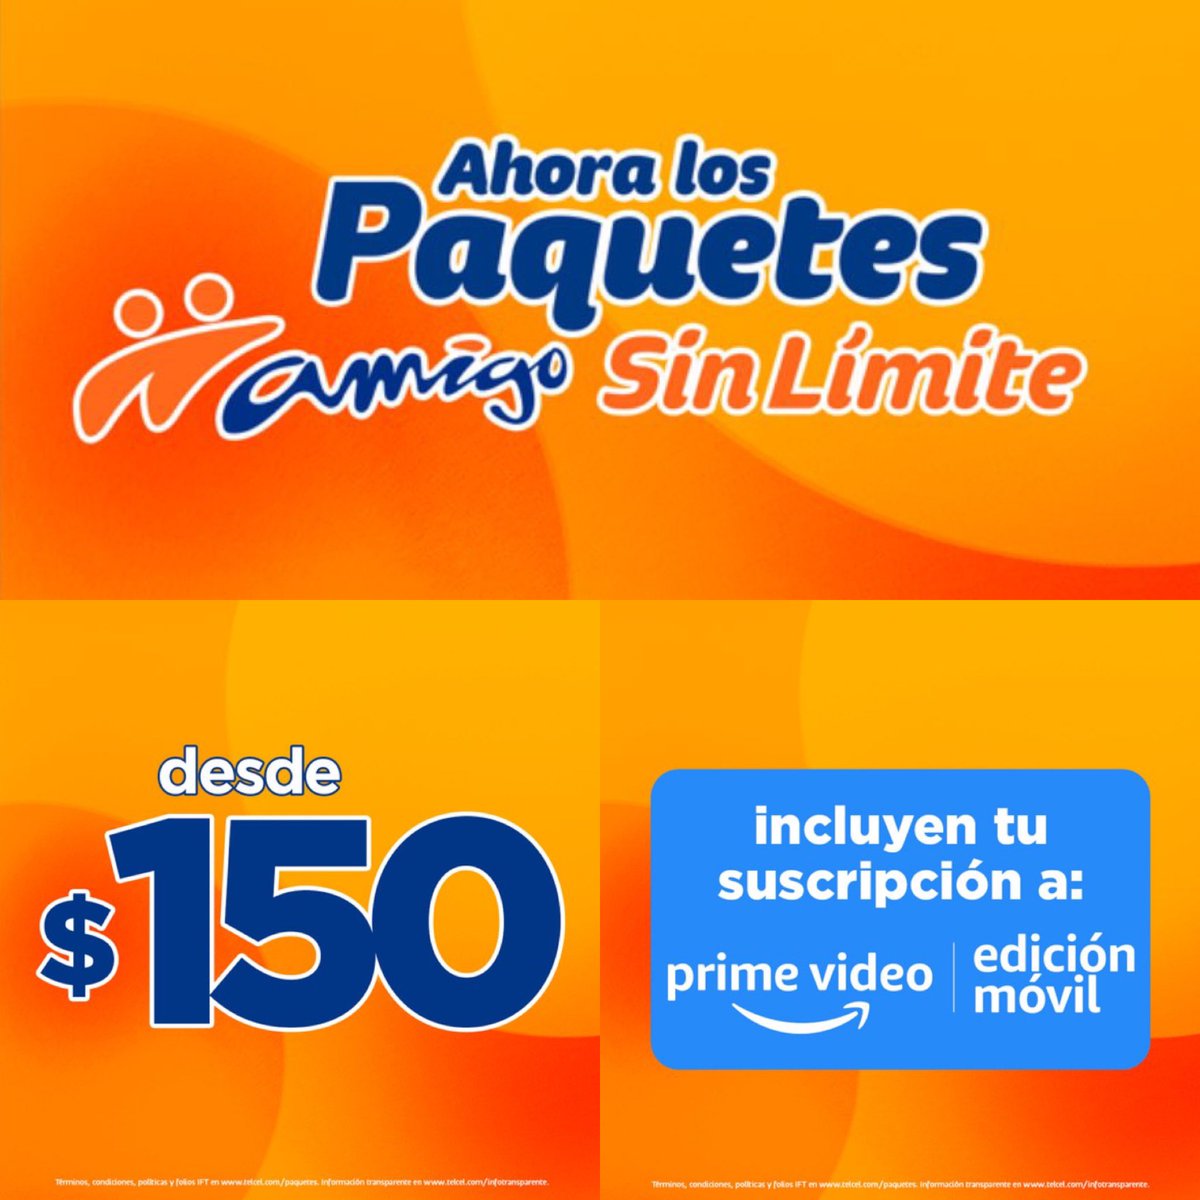 En Telcel, las recargas Amigo Sin Límite a partir de 150 pesos incluyen gratis Prime Video.